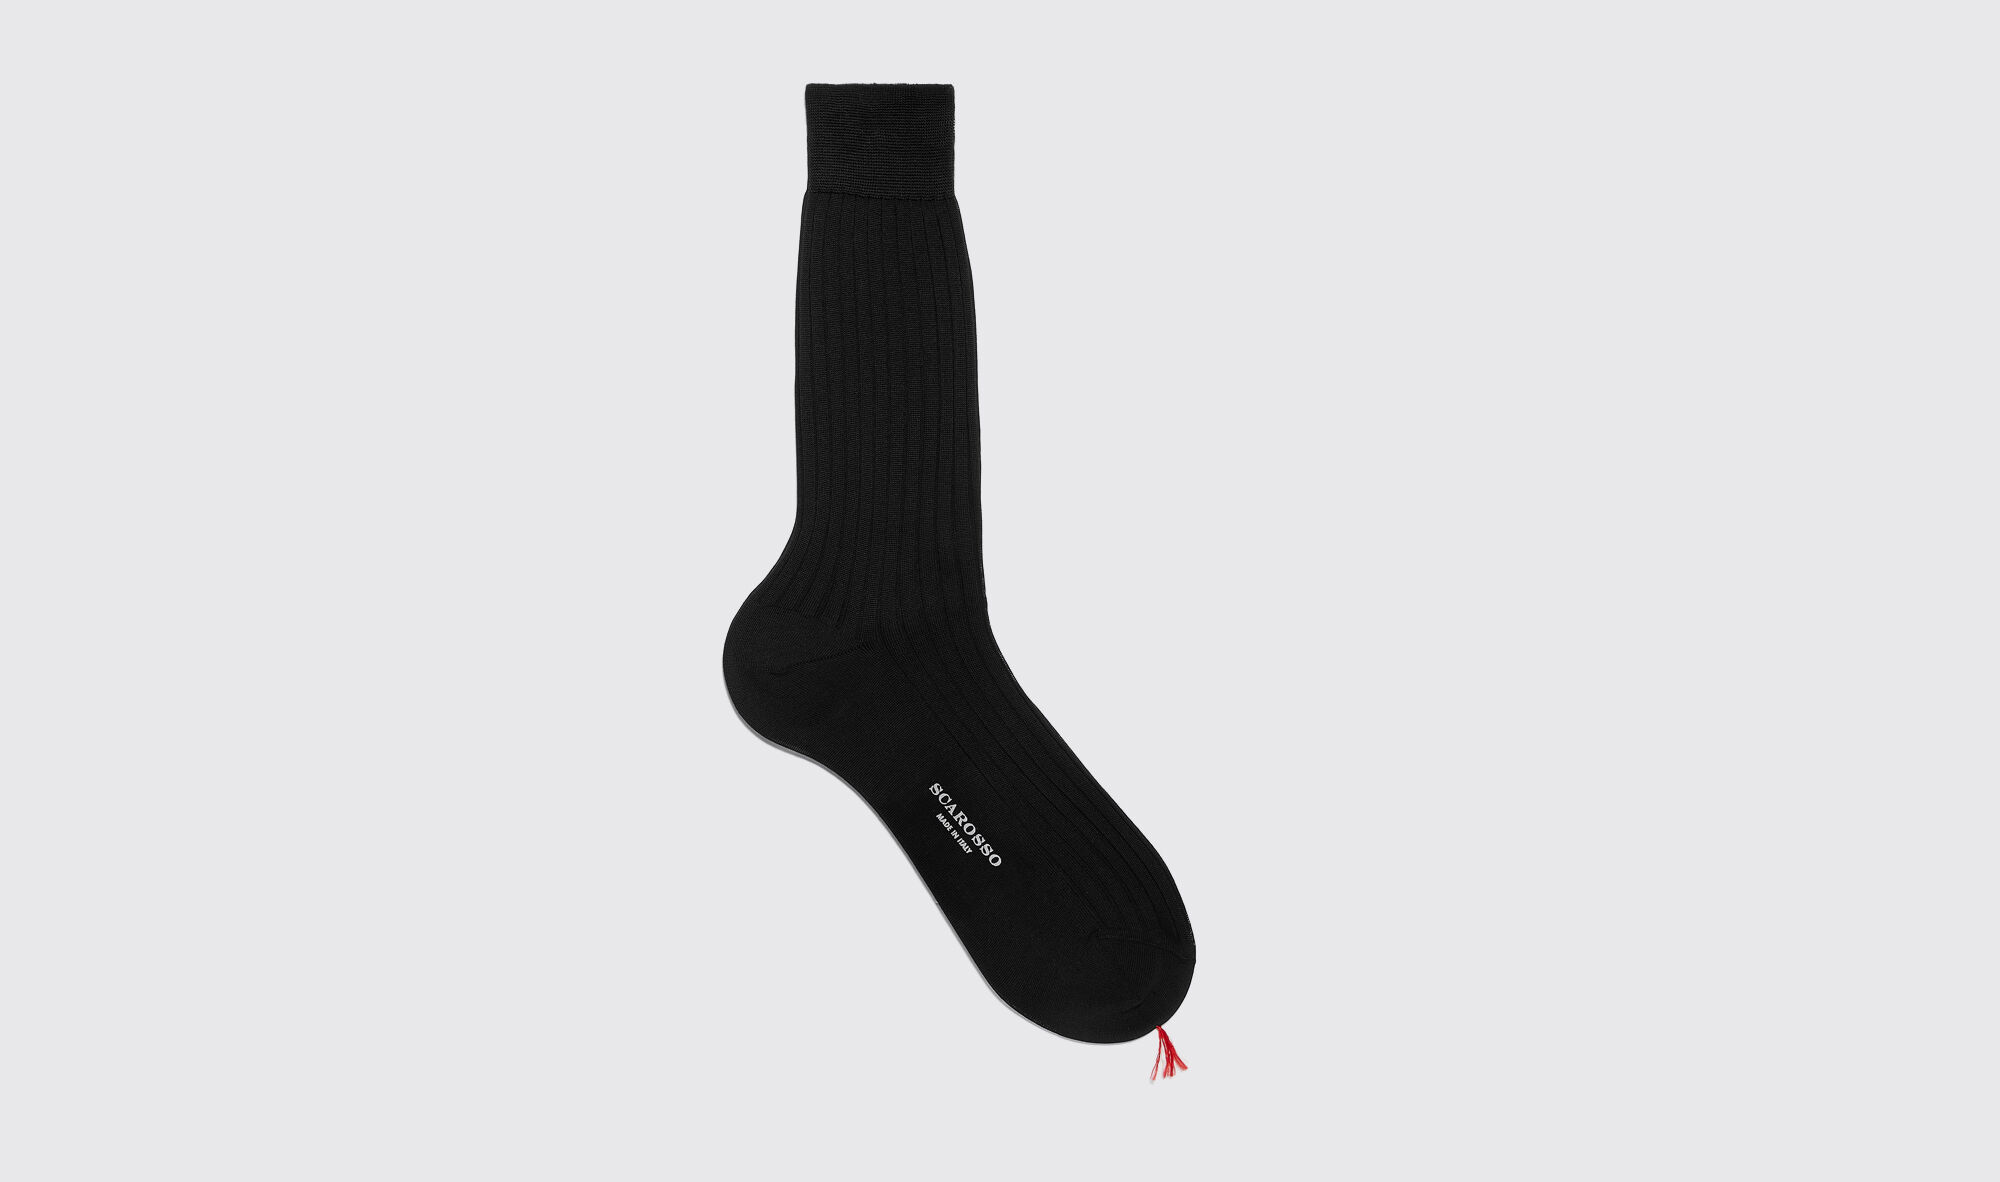 scarosso black cotton calf socks - uomo calze nero - cotone 42-43